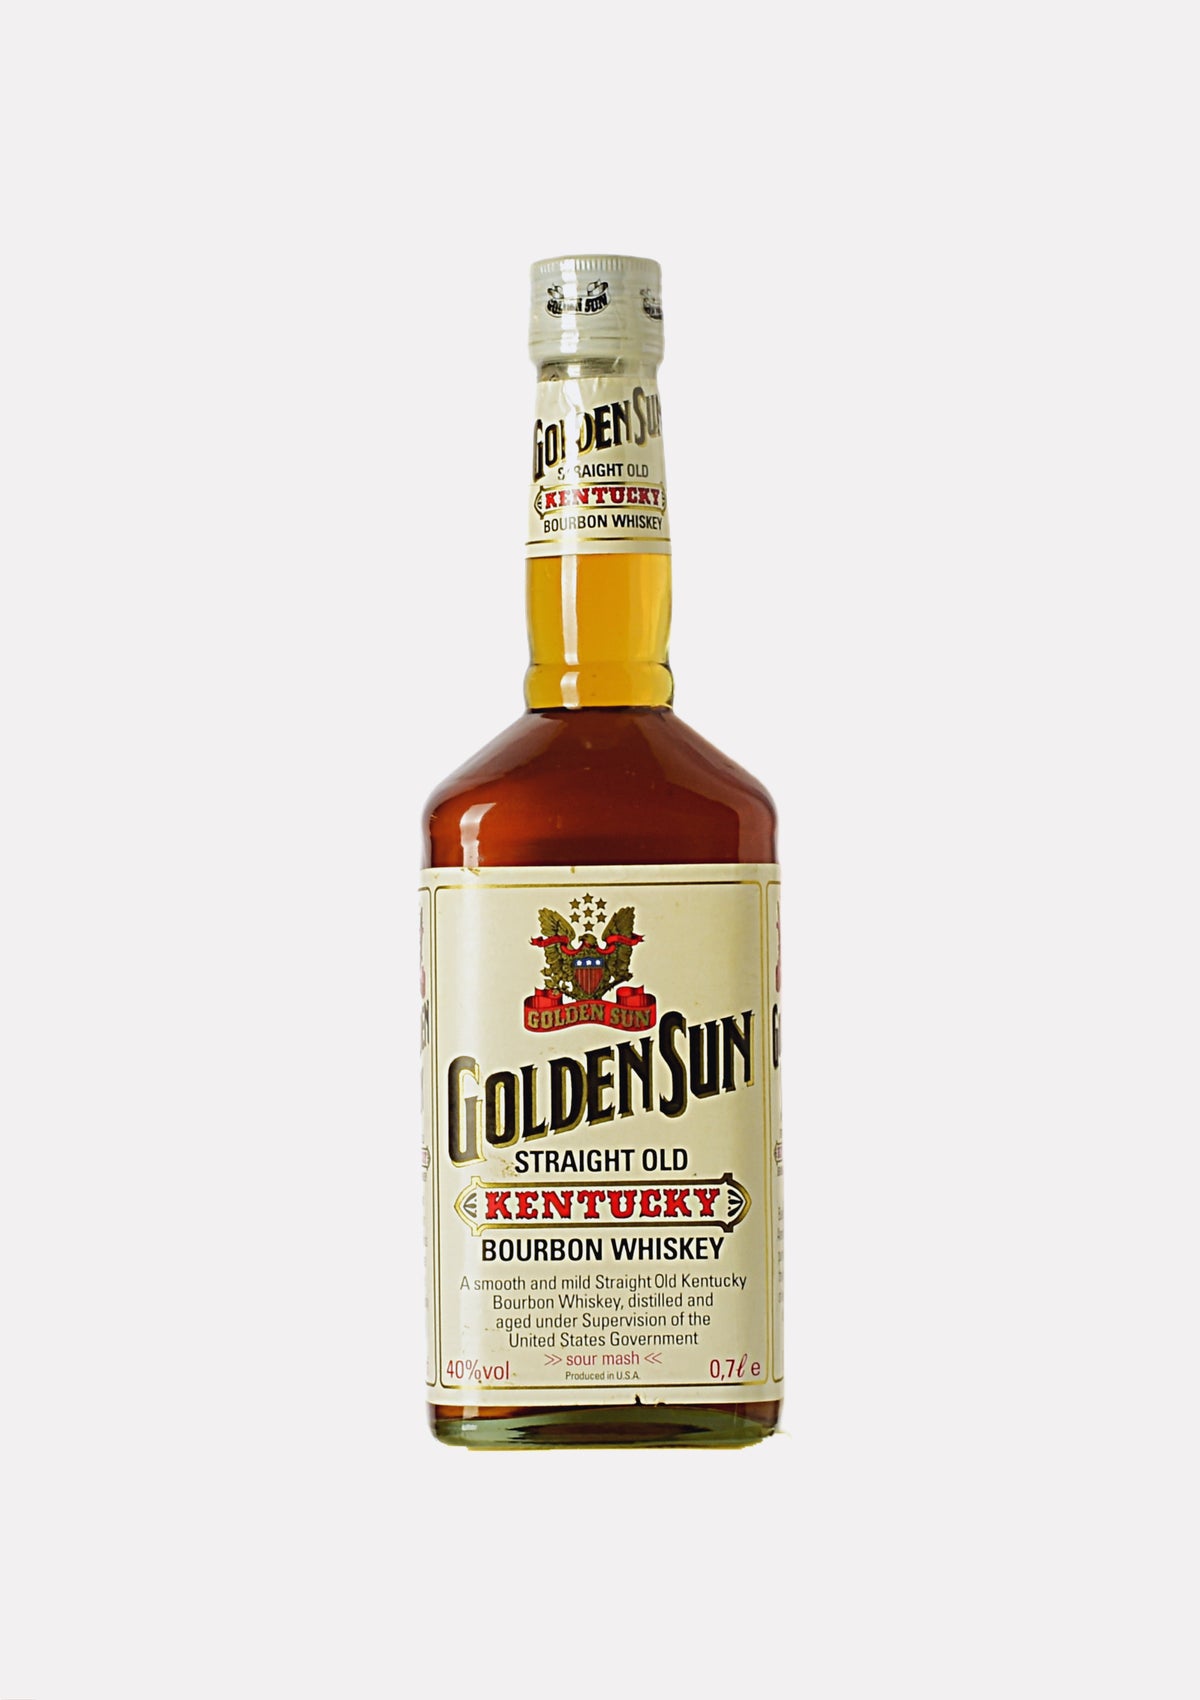 Golden Sun Straight Old Kentucky Bourbon Whiskey